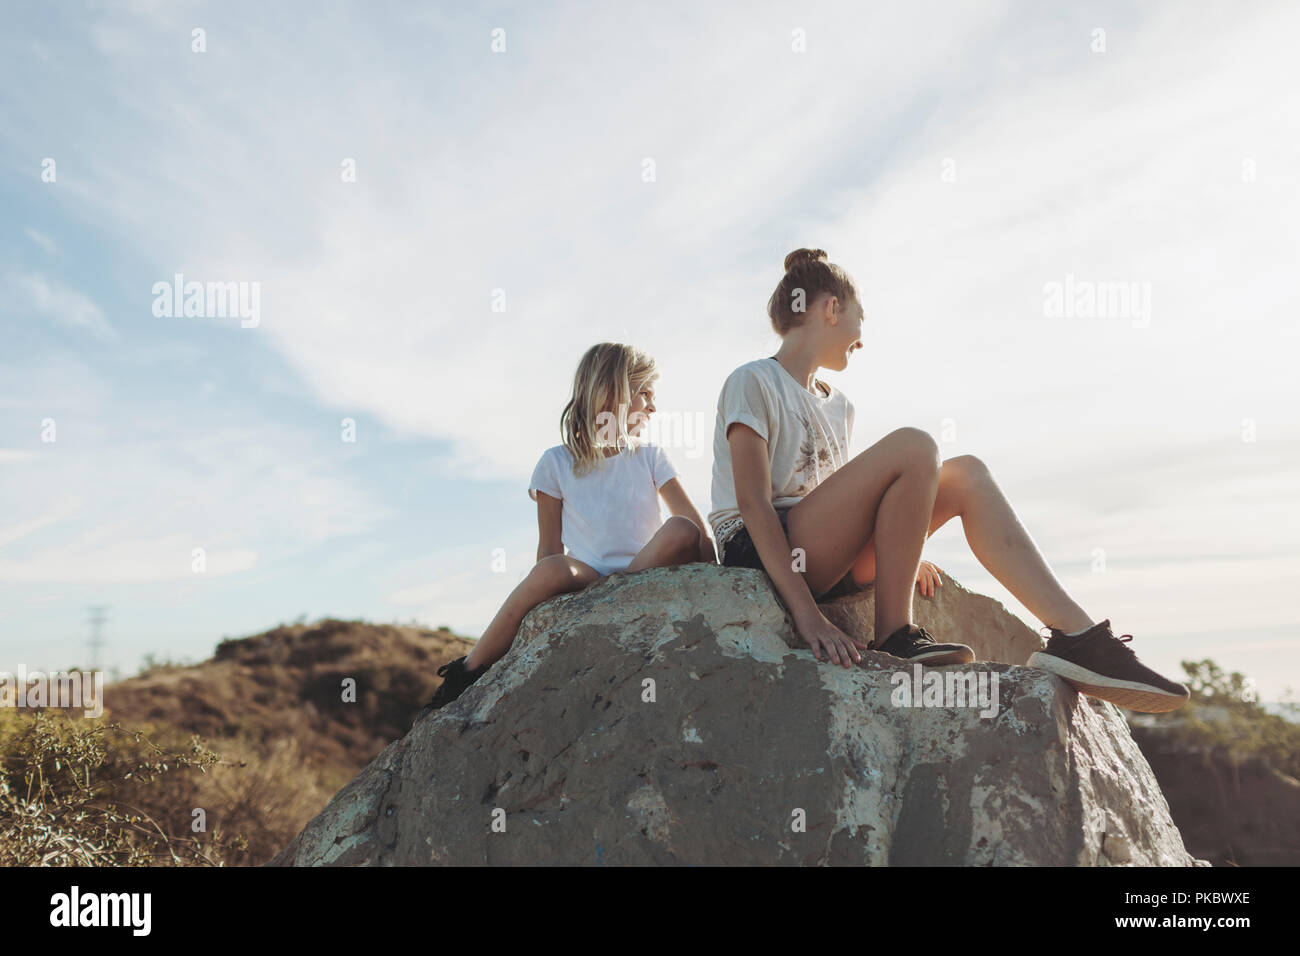 Deux jeunes filles s'asseoir sur un rocher à la recherche ; Los Angeles, Californie, États-Unis d'Amérique Banque D'Images